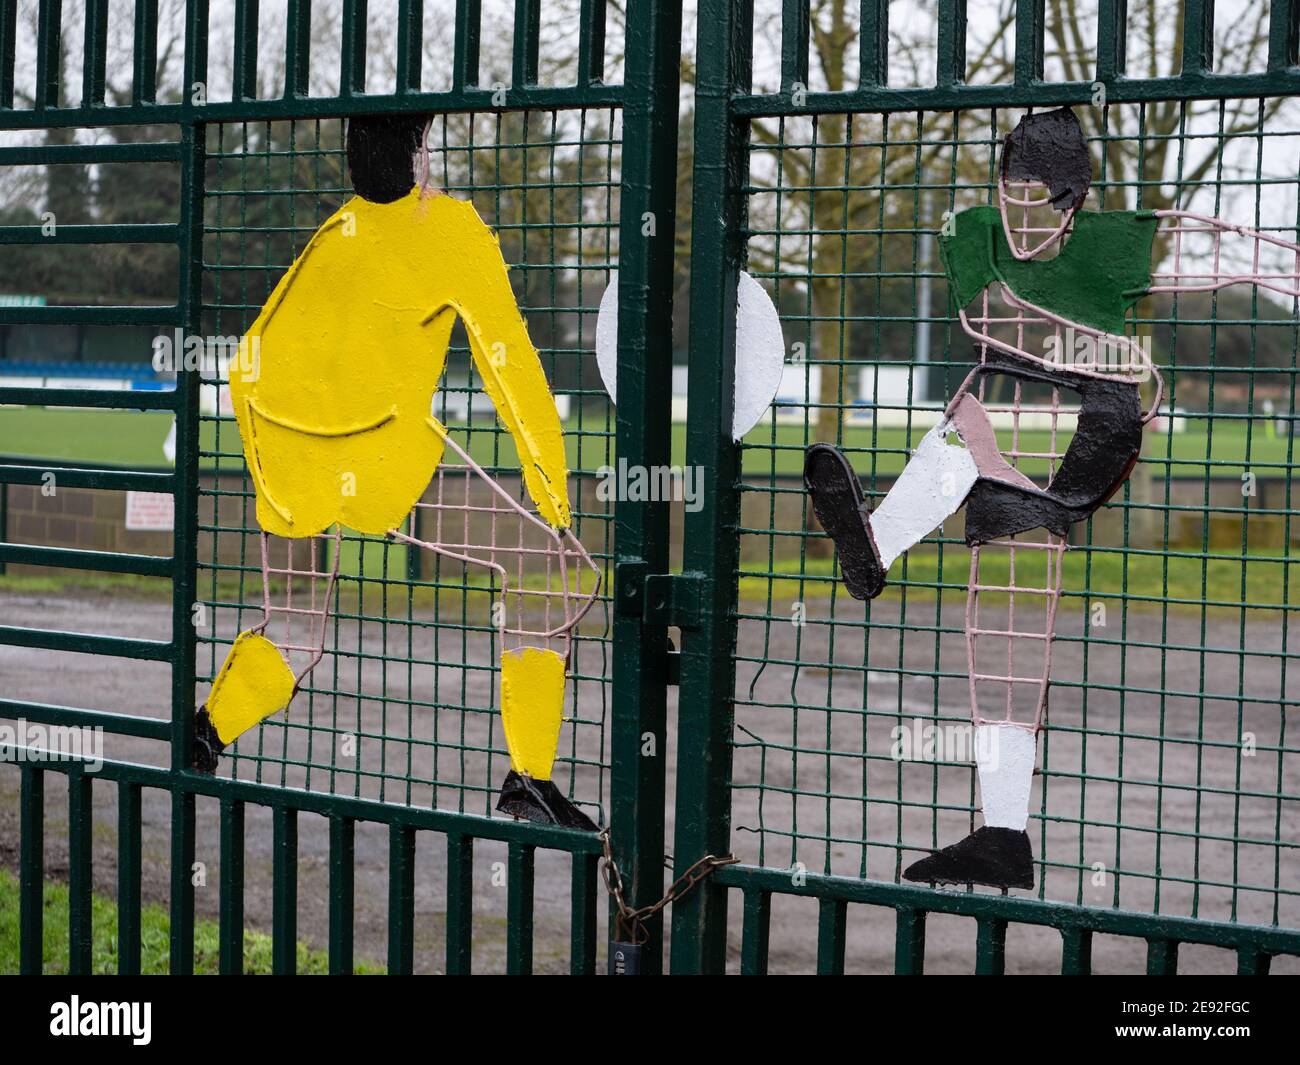 Portes d'entrée du Westbury United football Club montrant des sculptures de joueurs peintes sur elles. Banque D'Images